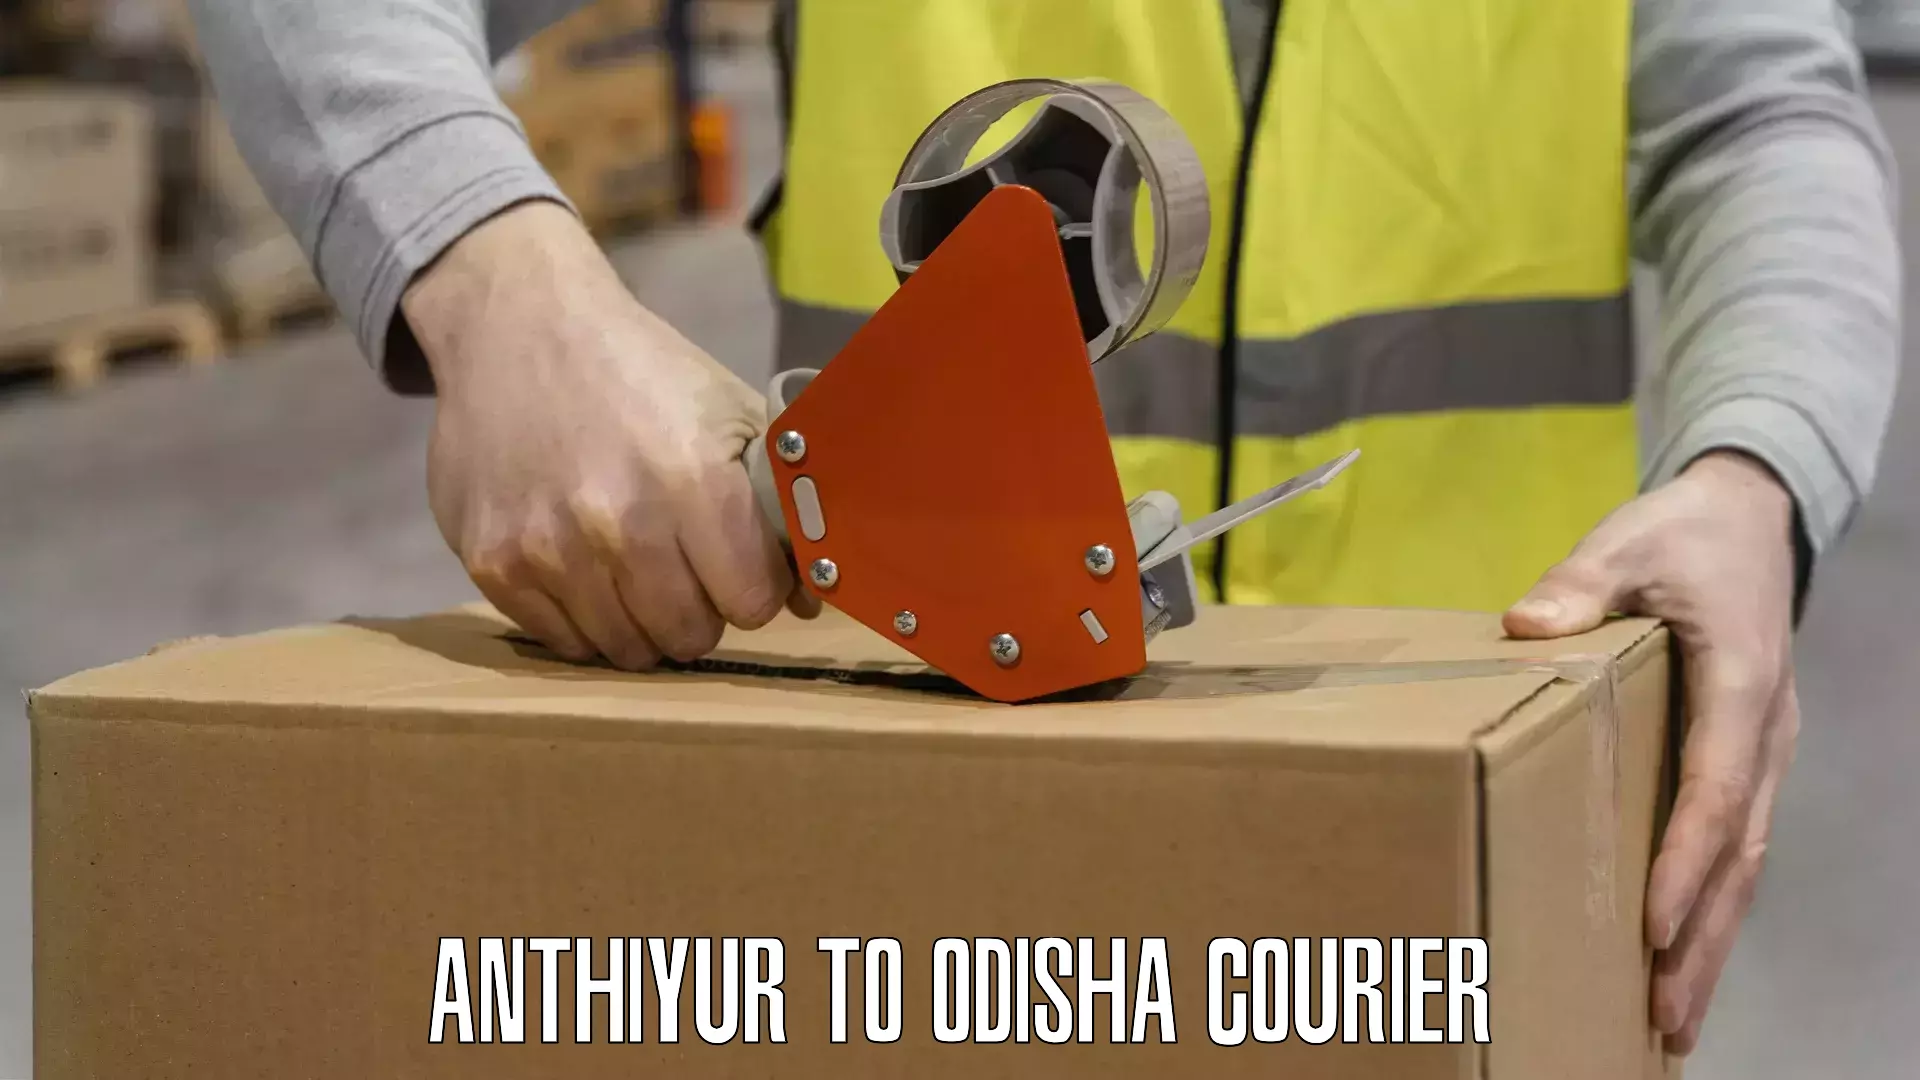 Courier service partnerships Anthiyur to Khaprakhol